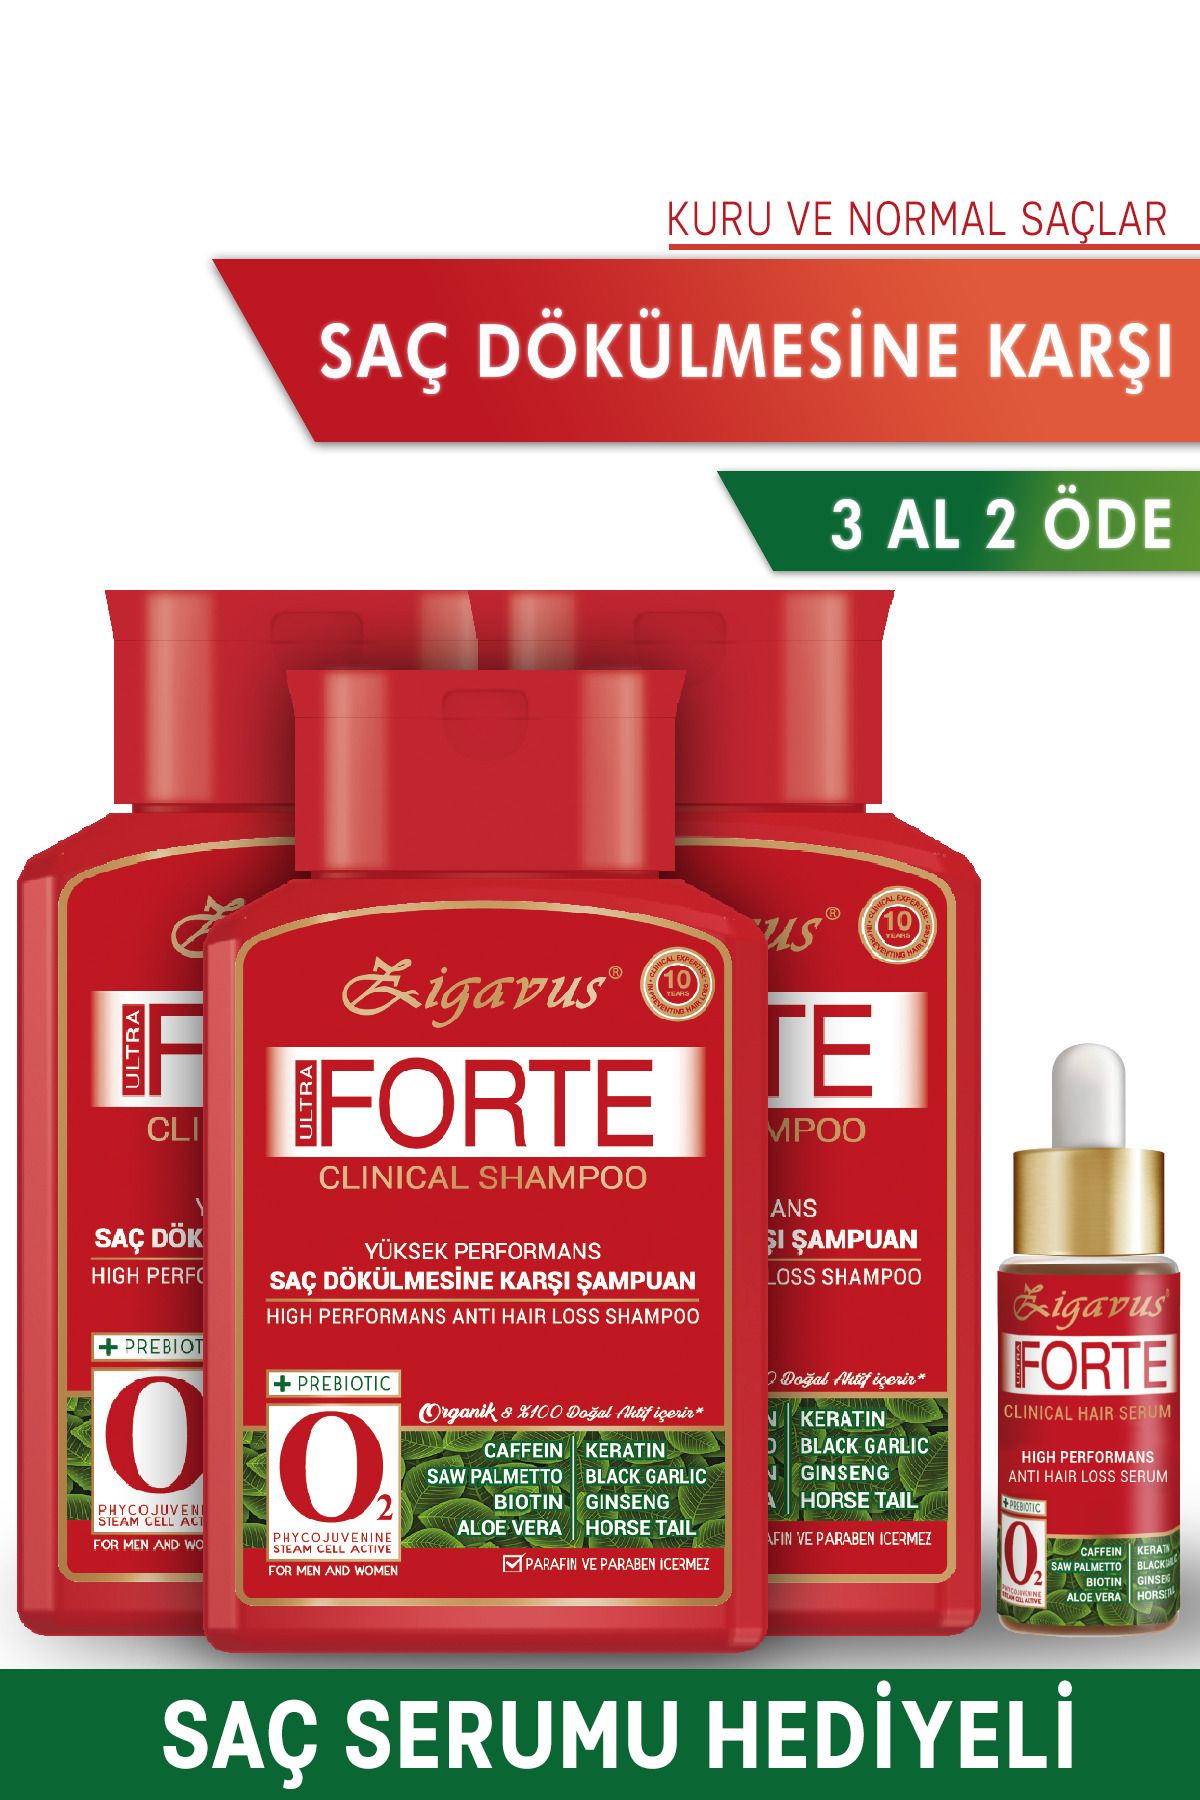 Zigavus Forte Saç Dökülmesi Karşı Şampuan 300 ml -Kuru ve Normal Saçlar -3 Al 2 Öde  8699349130961